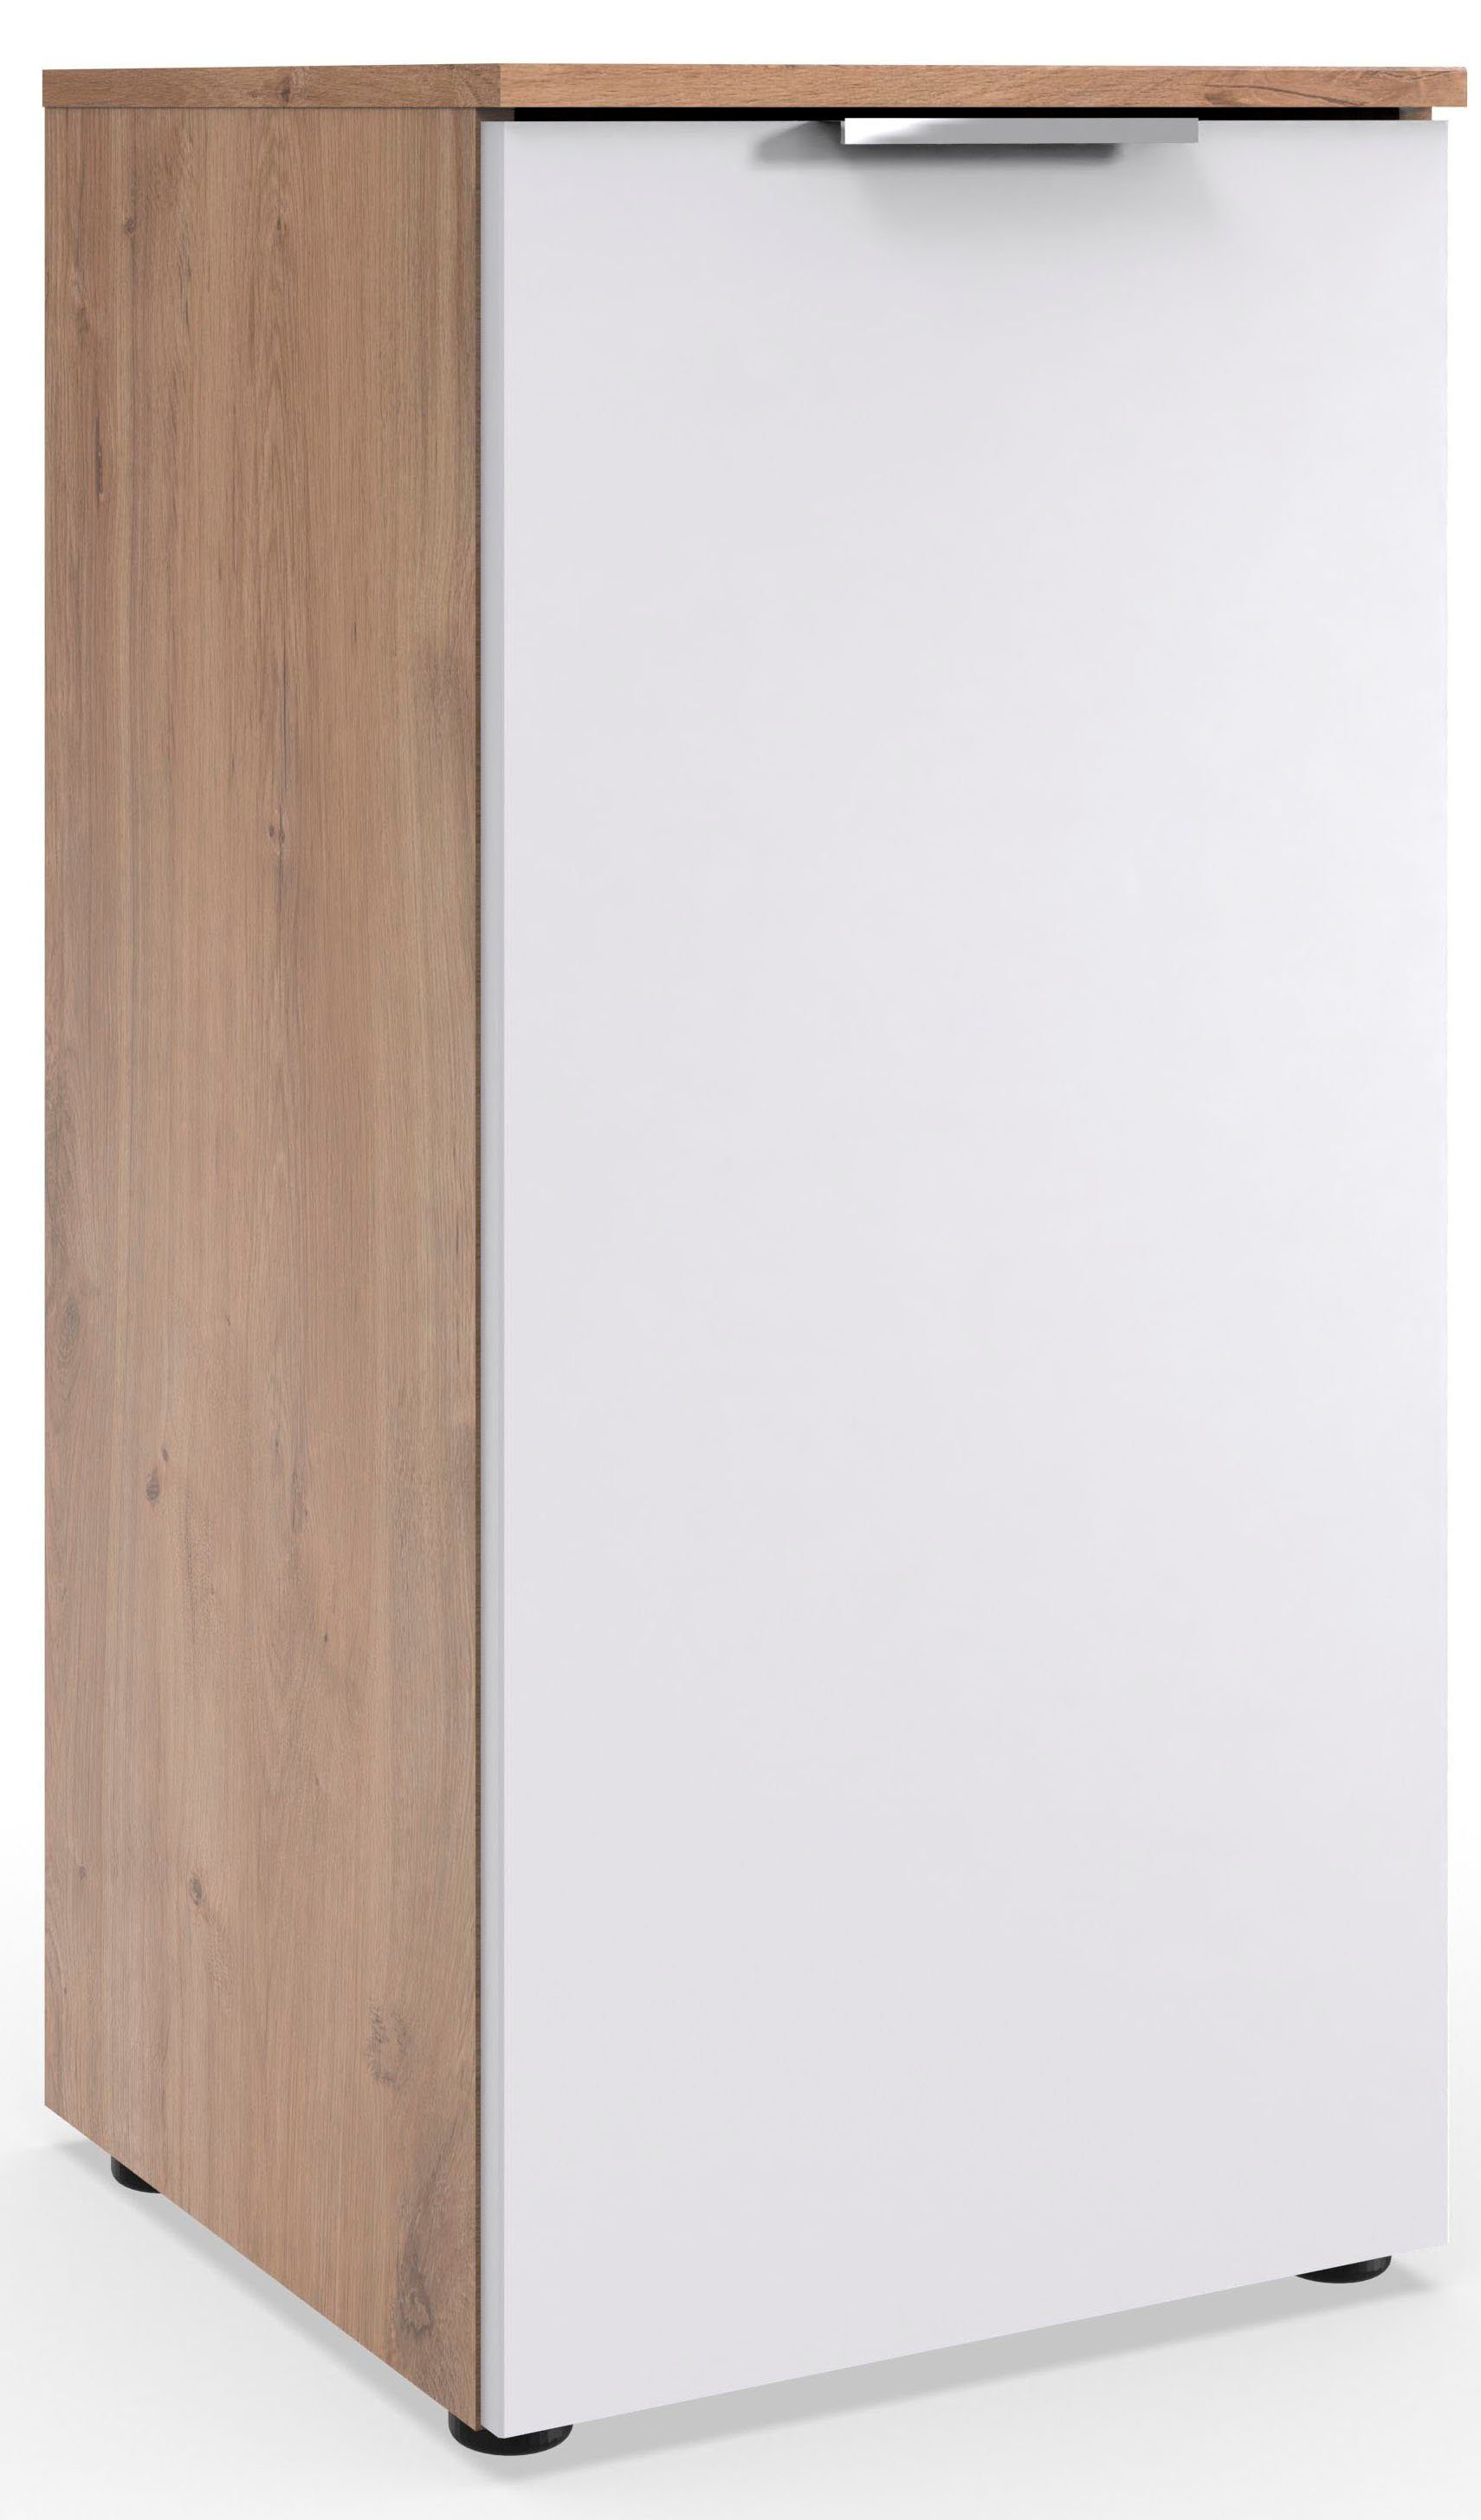 Wimex Kast Level by fresh to go 1-deurs met soft-close functie, 41 cm breed, 92 cm hoog